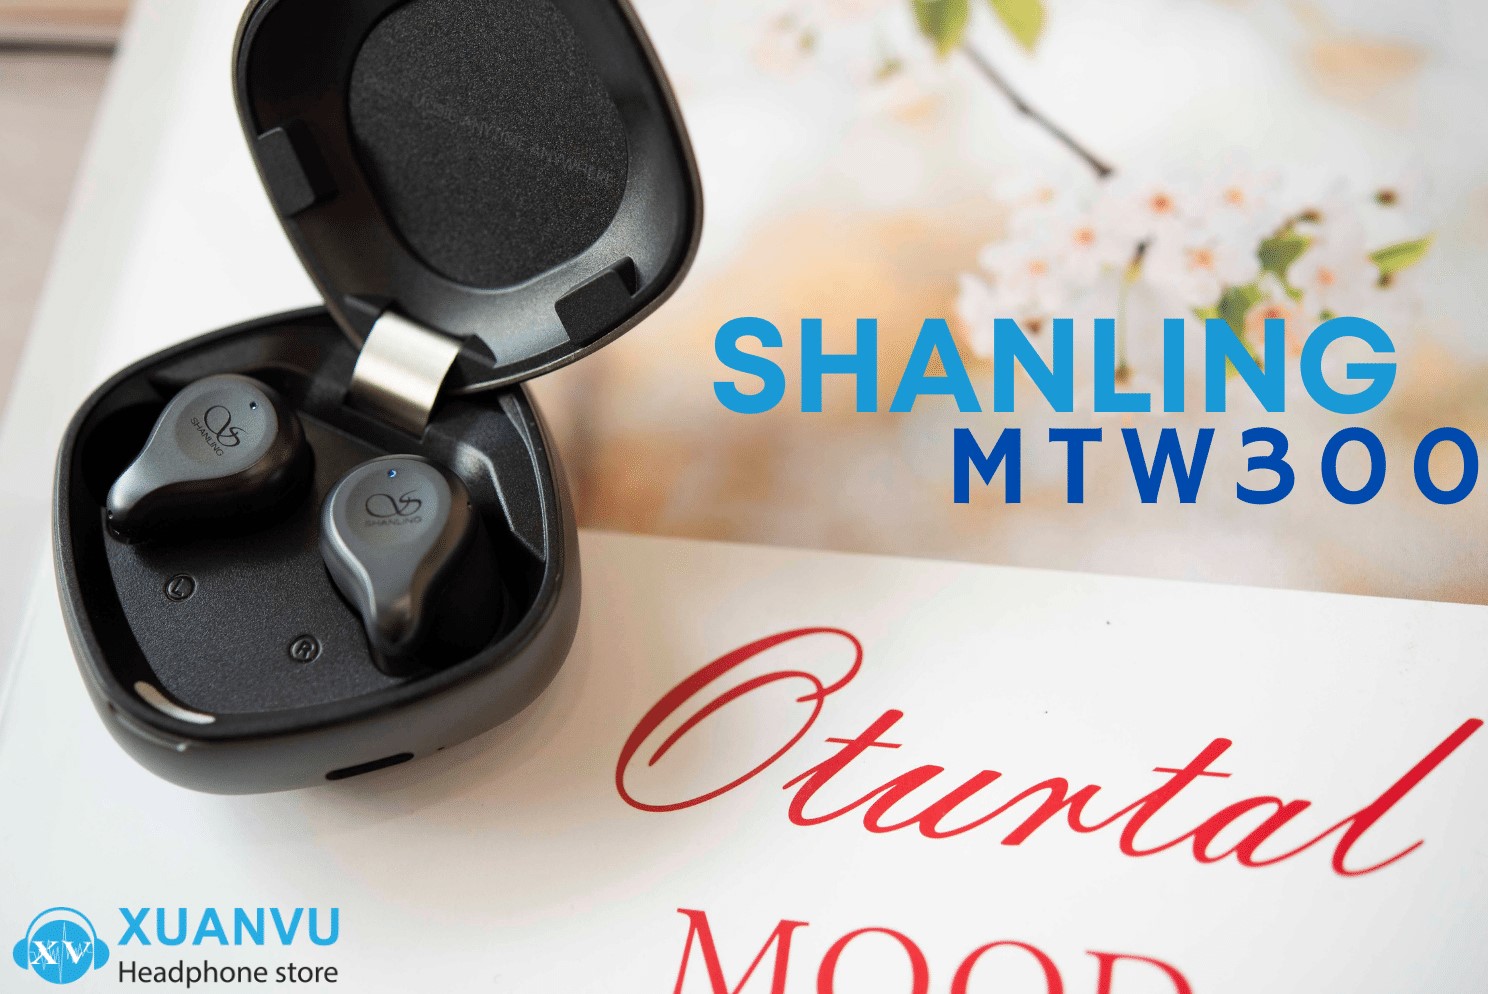 Đánh giá Shanling MTW300: Tai nghe TWS mới nhất đến từ Shanling